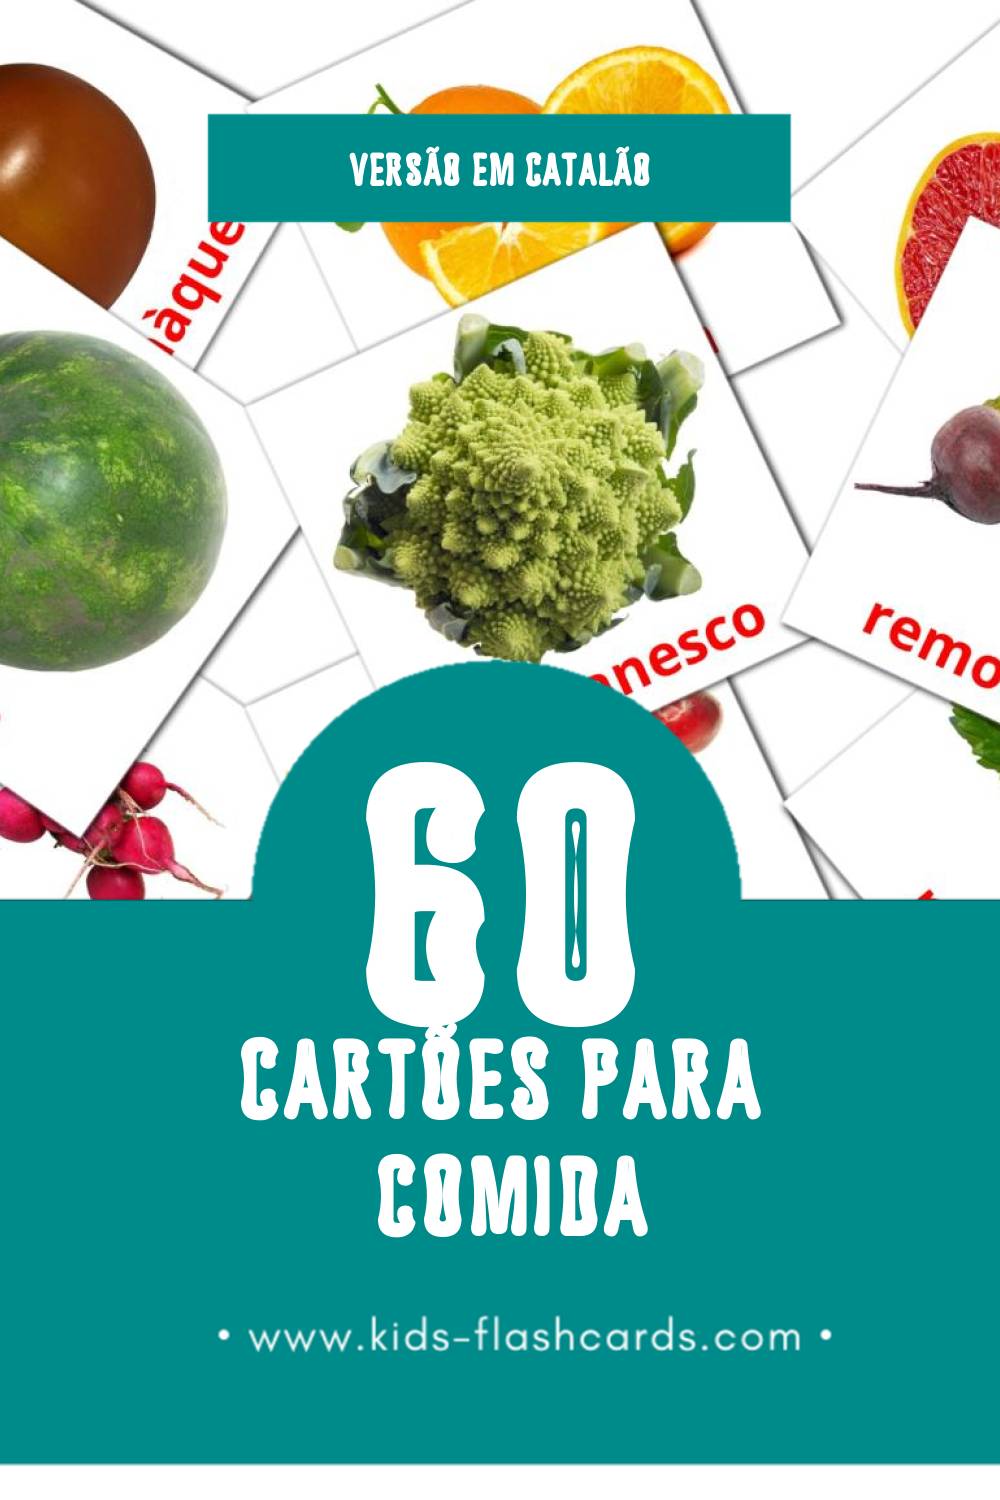 Flashcards de Aliments Visuais para Toddlers (60 cartões em Catalão)